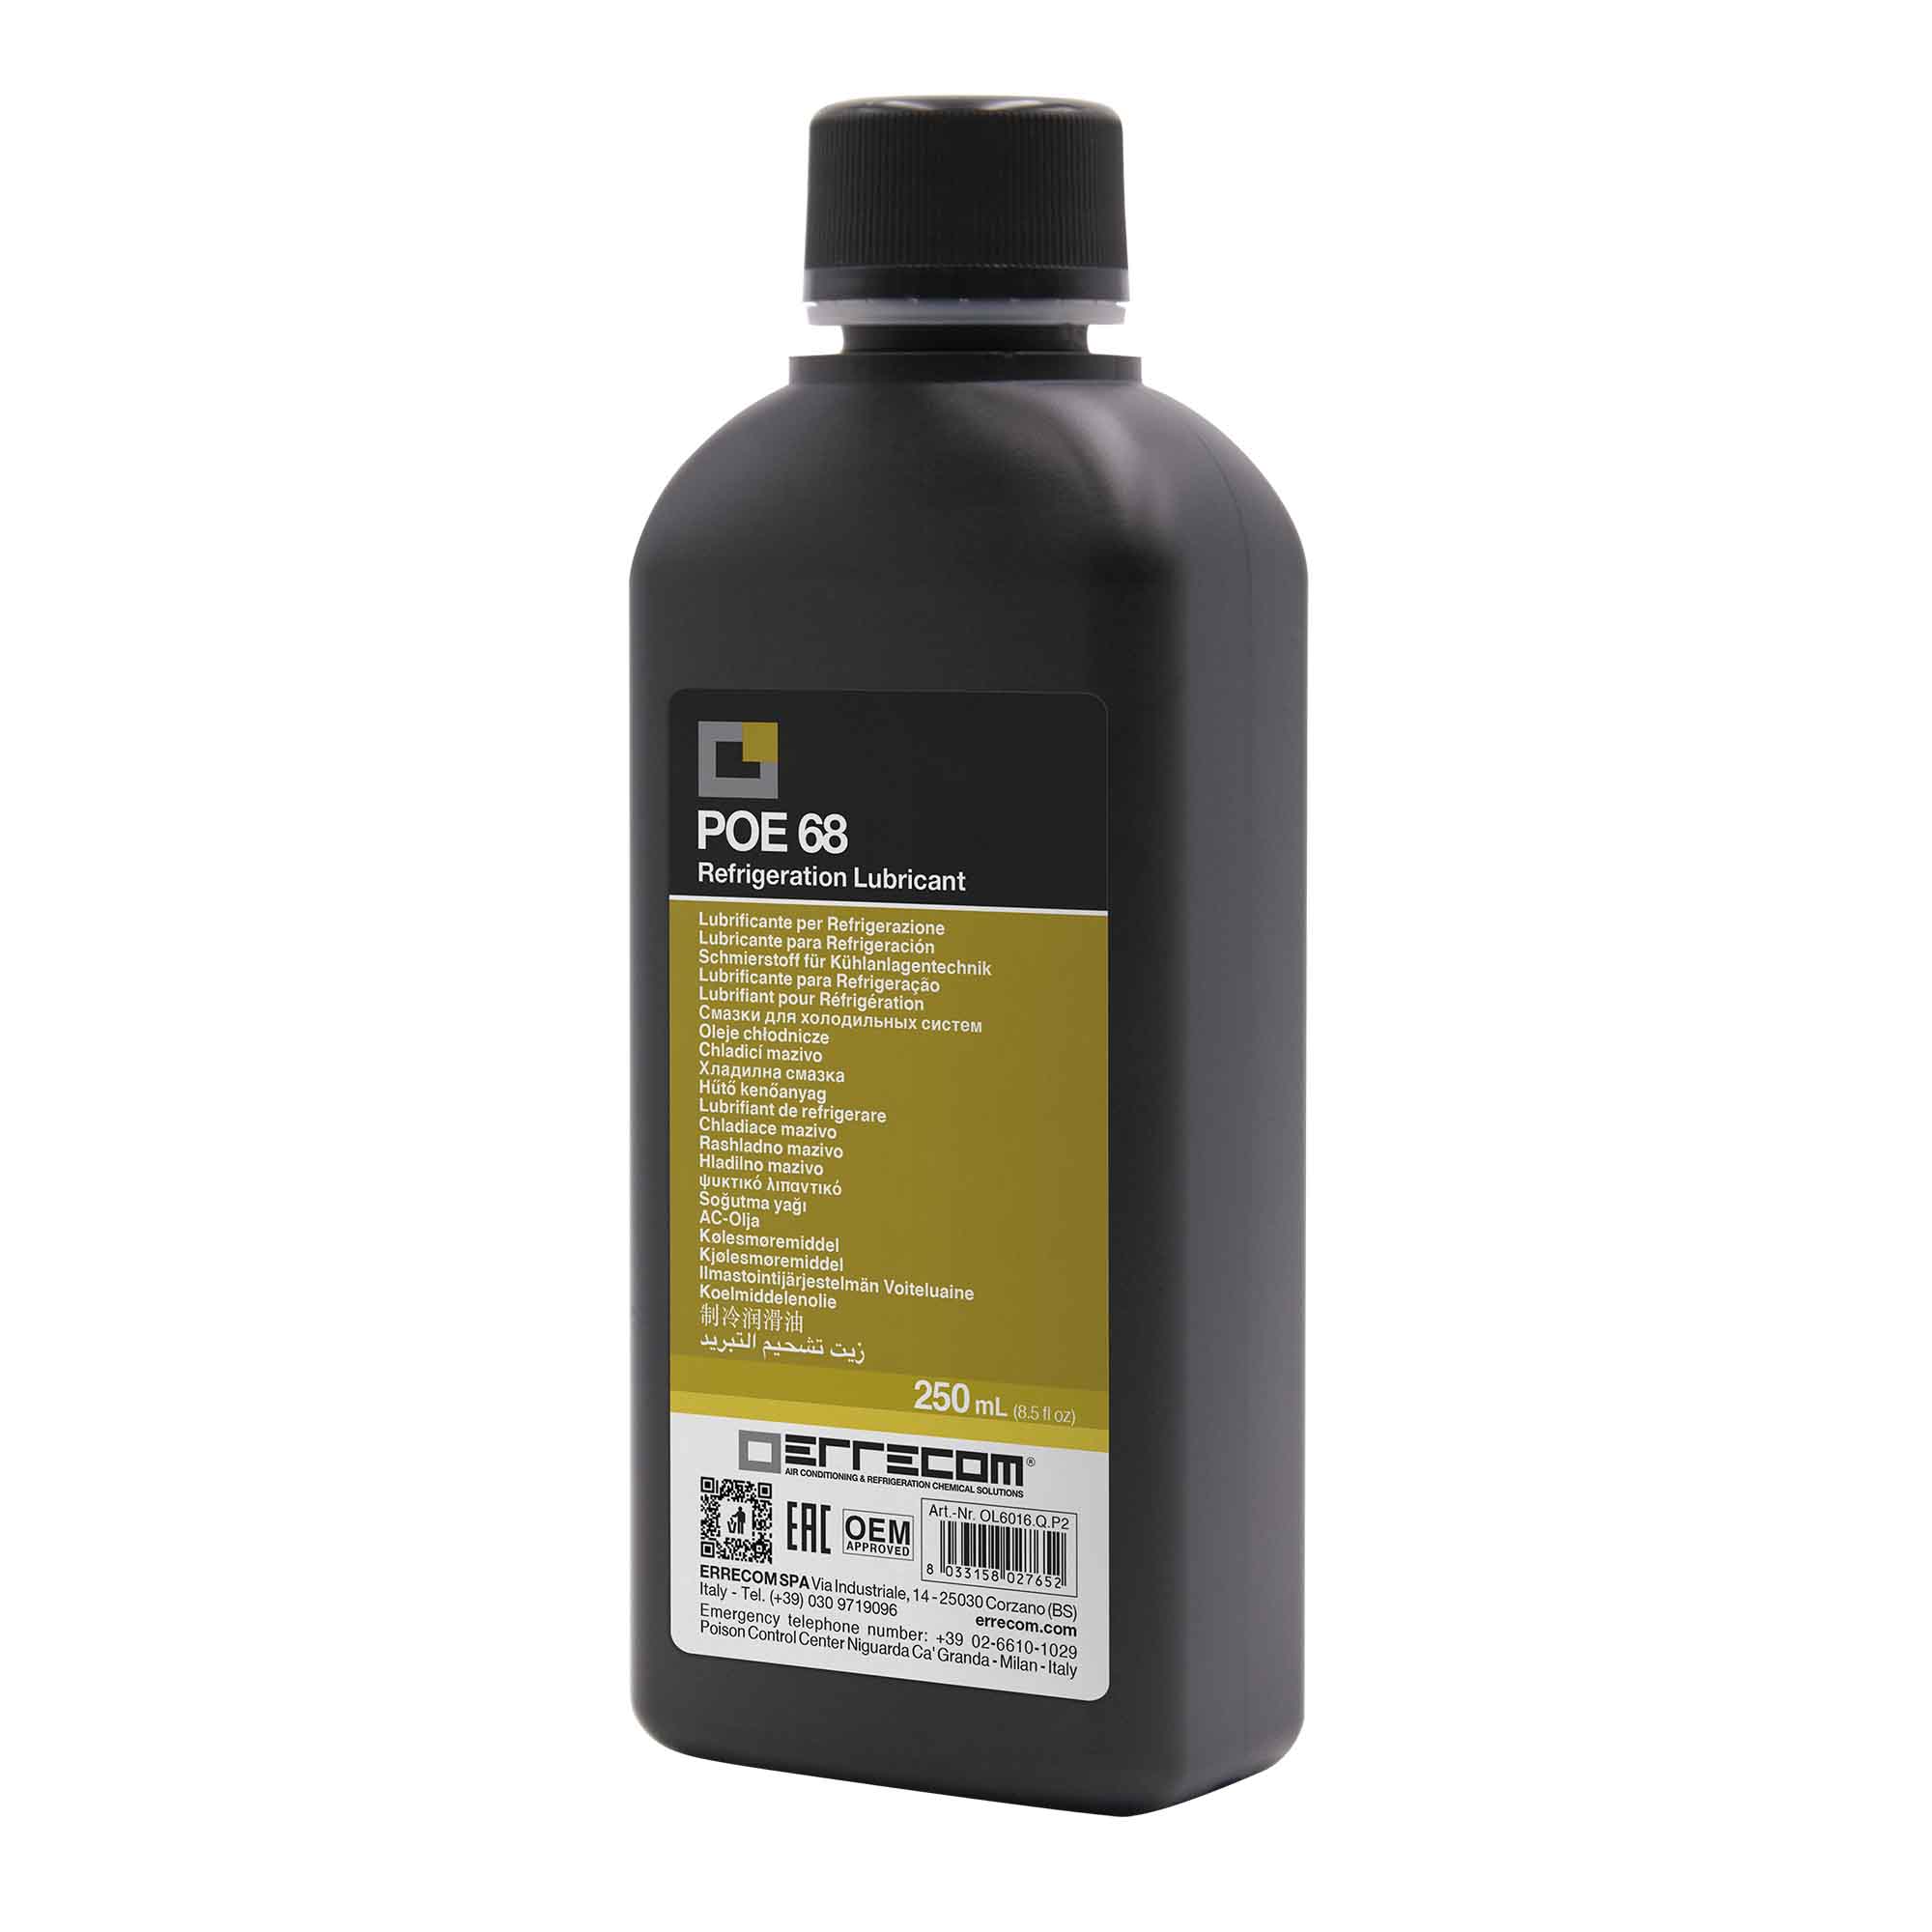 24 x Olio lubrificante R&AC Polyol Estere (POE) Errecom 68 - Tanica in Plastica da 250 ml. - Confezione n° 24 pz. (totale 6 litri) - Foto 1 